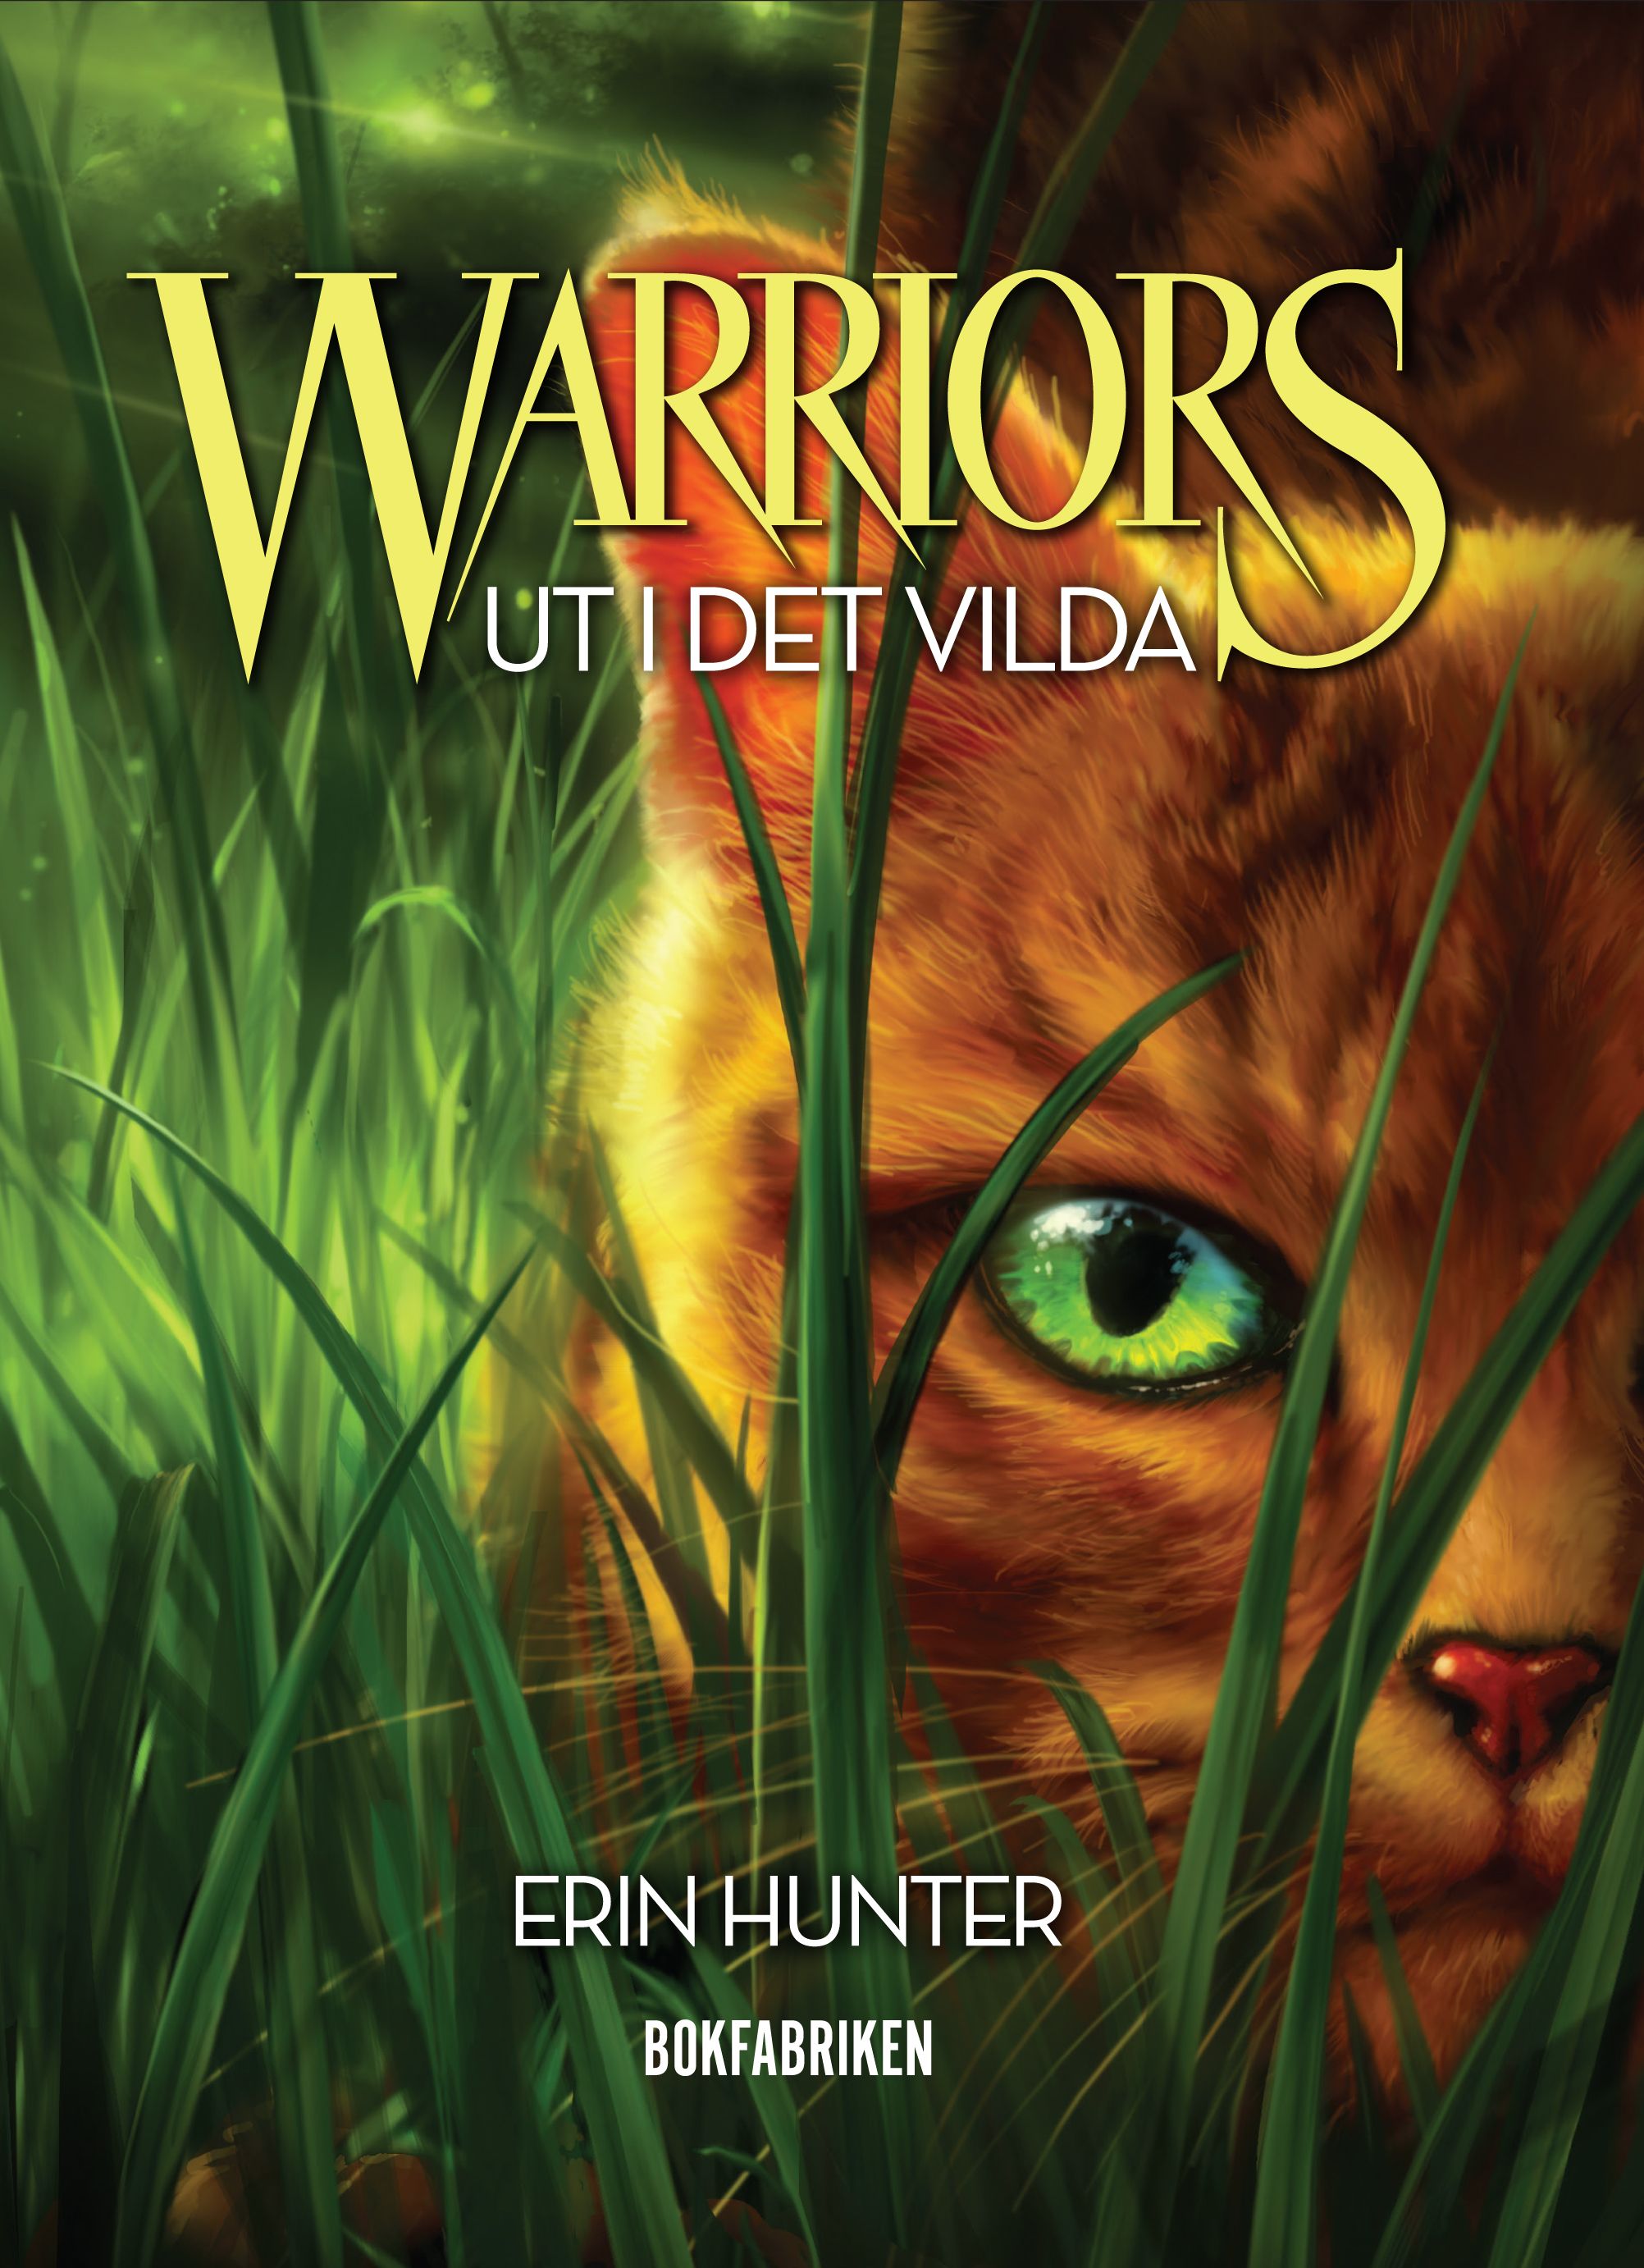 Warriors - Ut i det vilda, e-bok av Erin Hunter